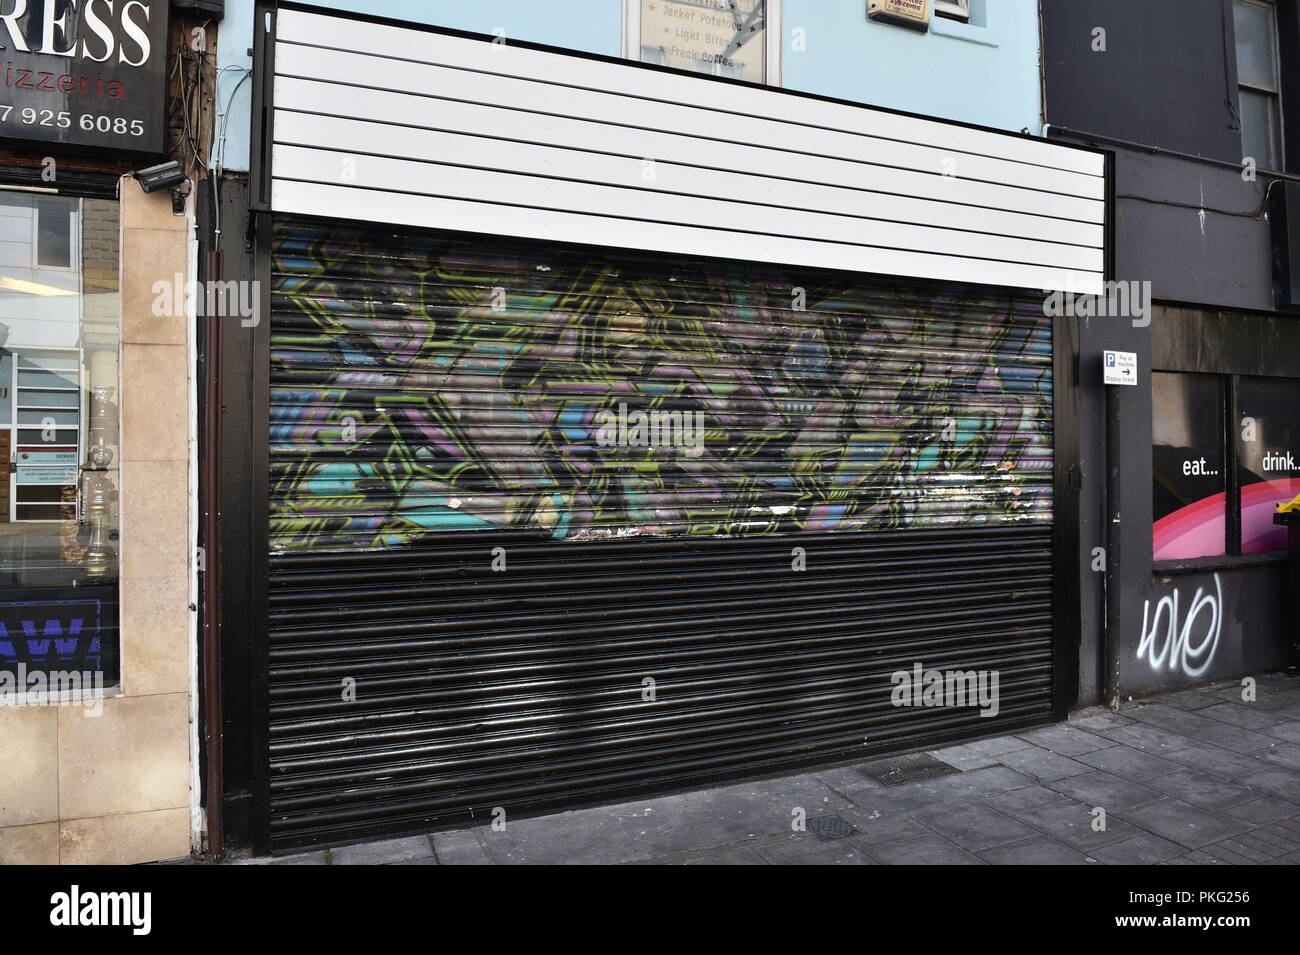 Une murale de Banksy sur les volets des passants sur Park Row, Bristol a été accidentellement peint en noir par les nouveaux propriétaires de la boutique durant les rénovations. Banque D'Images